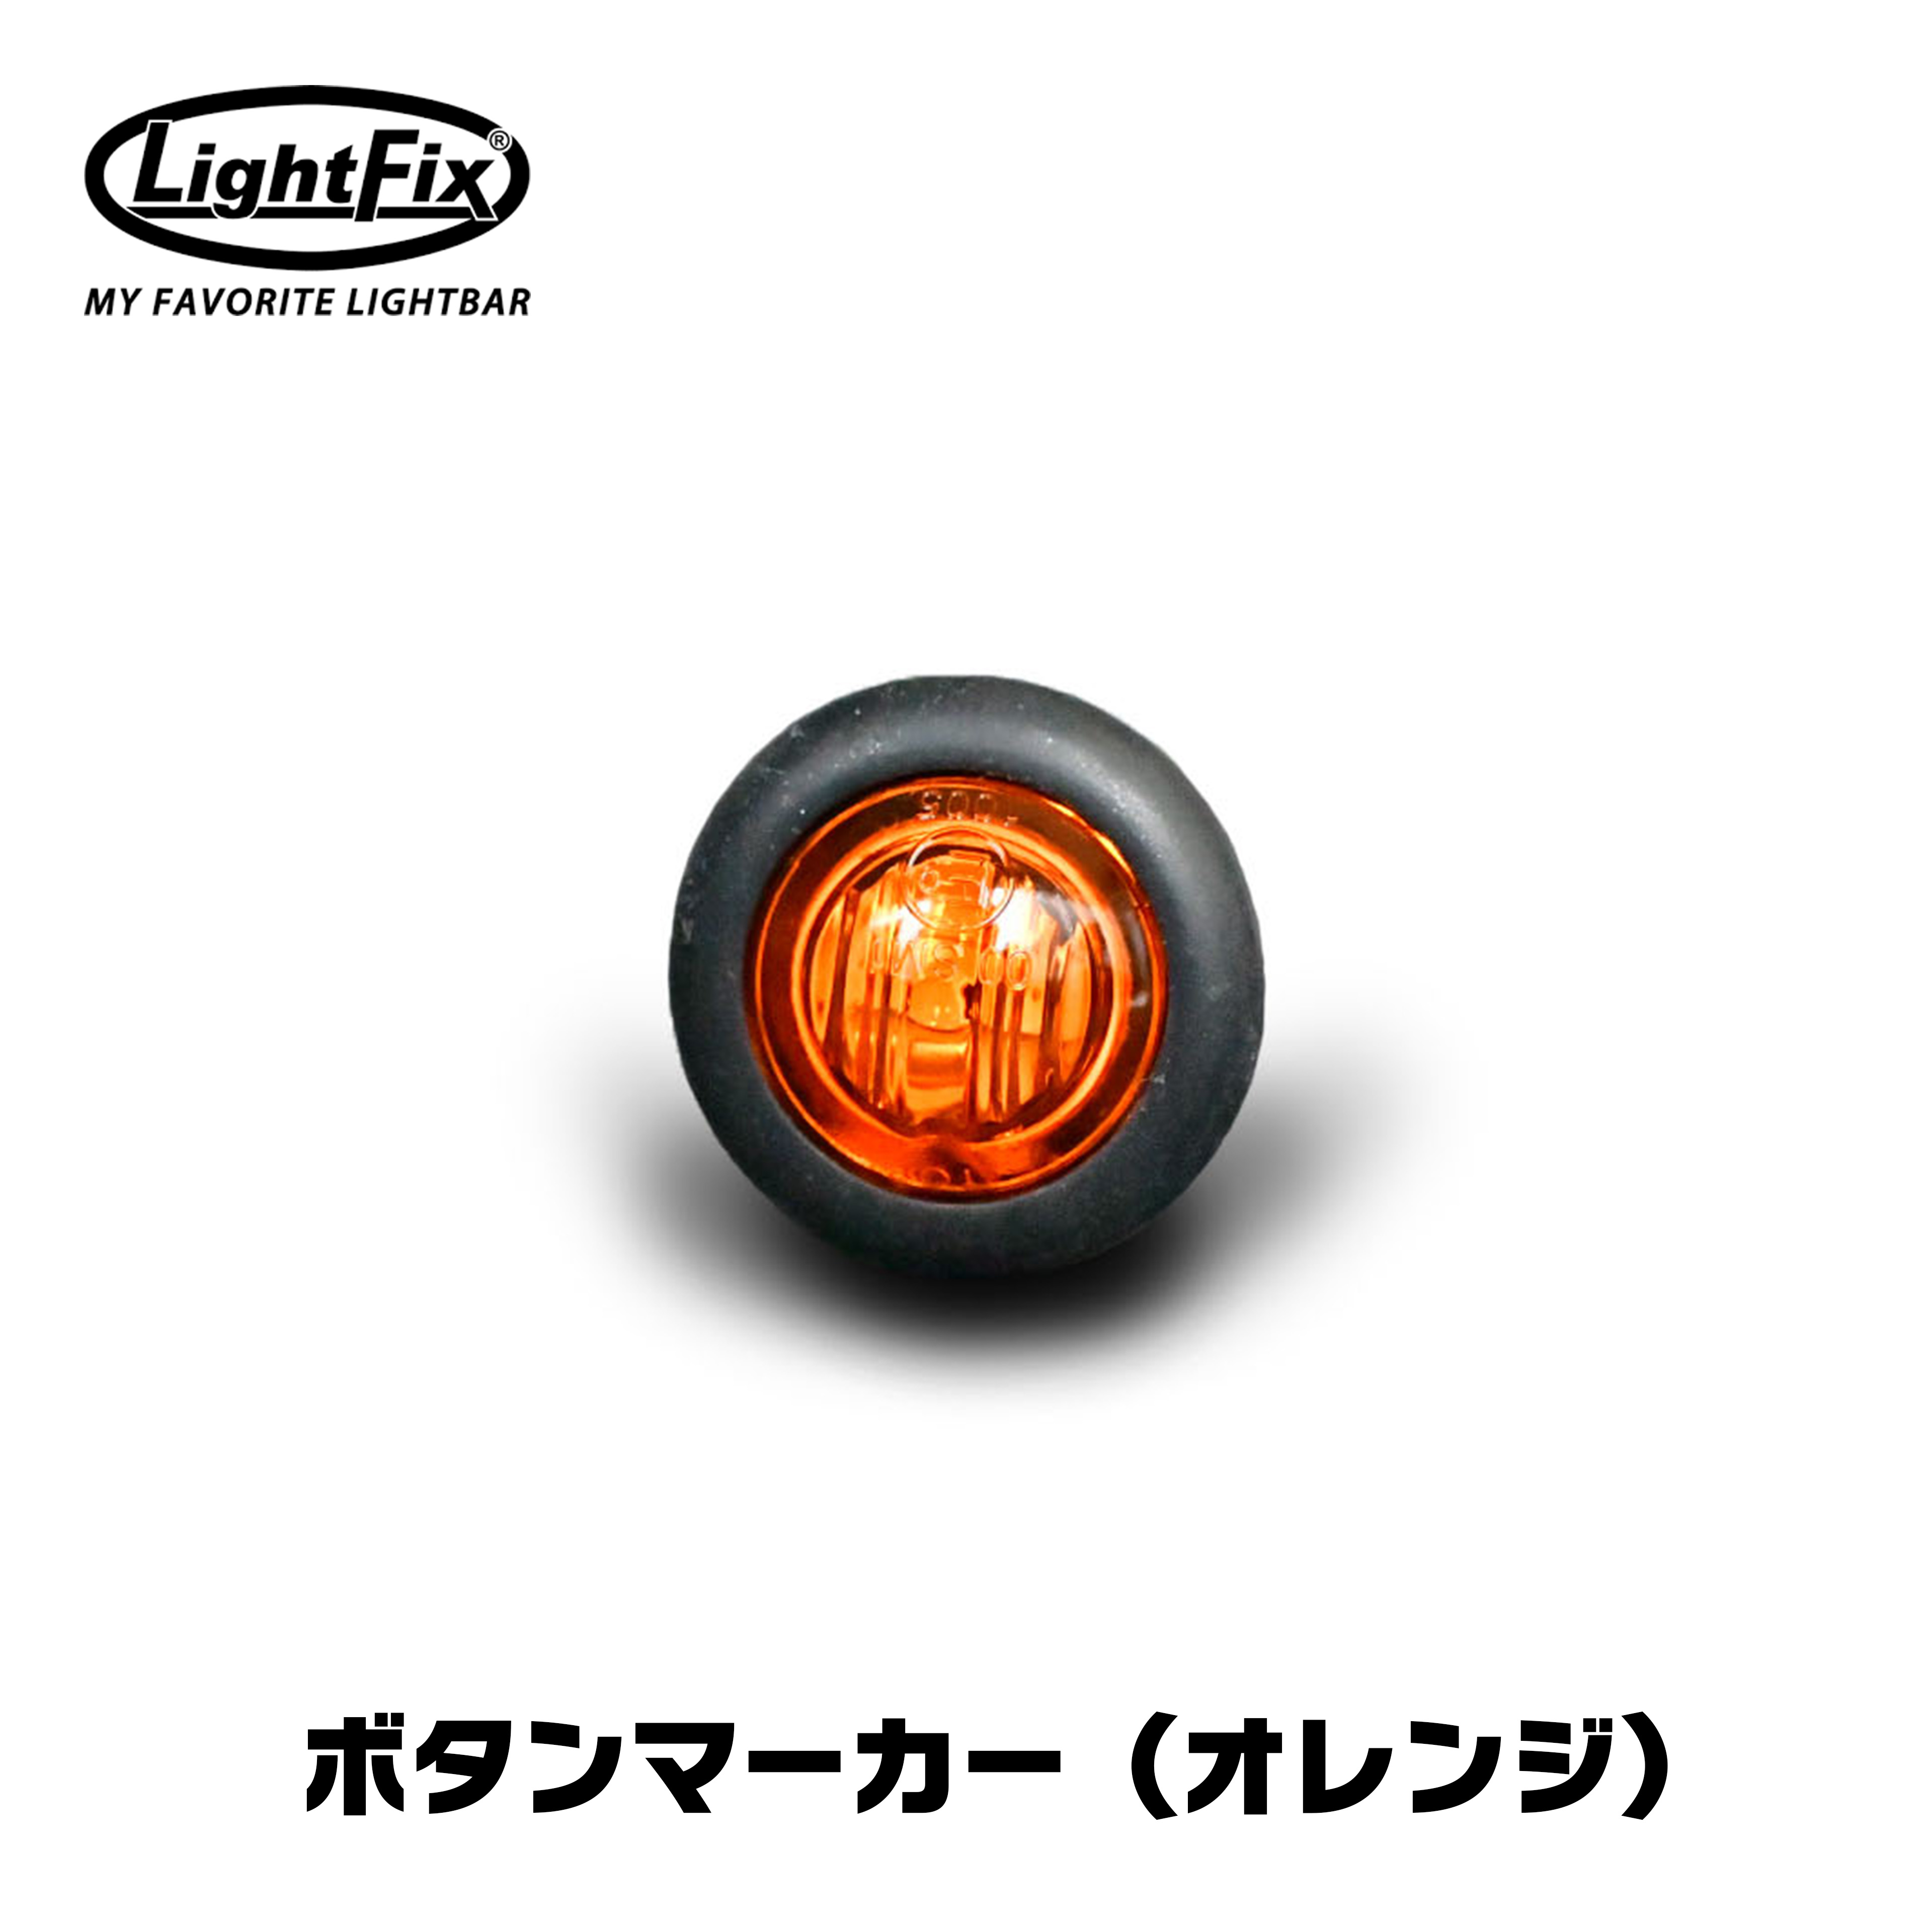 LightFix ライトフィックス マーカー ランプ サイド オレンジ アンバー ボタン 丸型 ユーロ カスタム ボルボ スカニア24V scania volvo fh